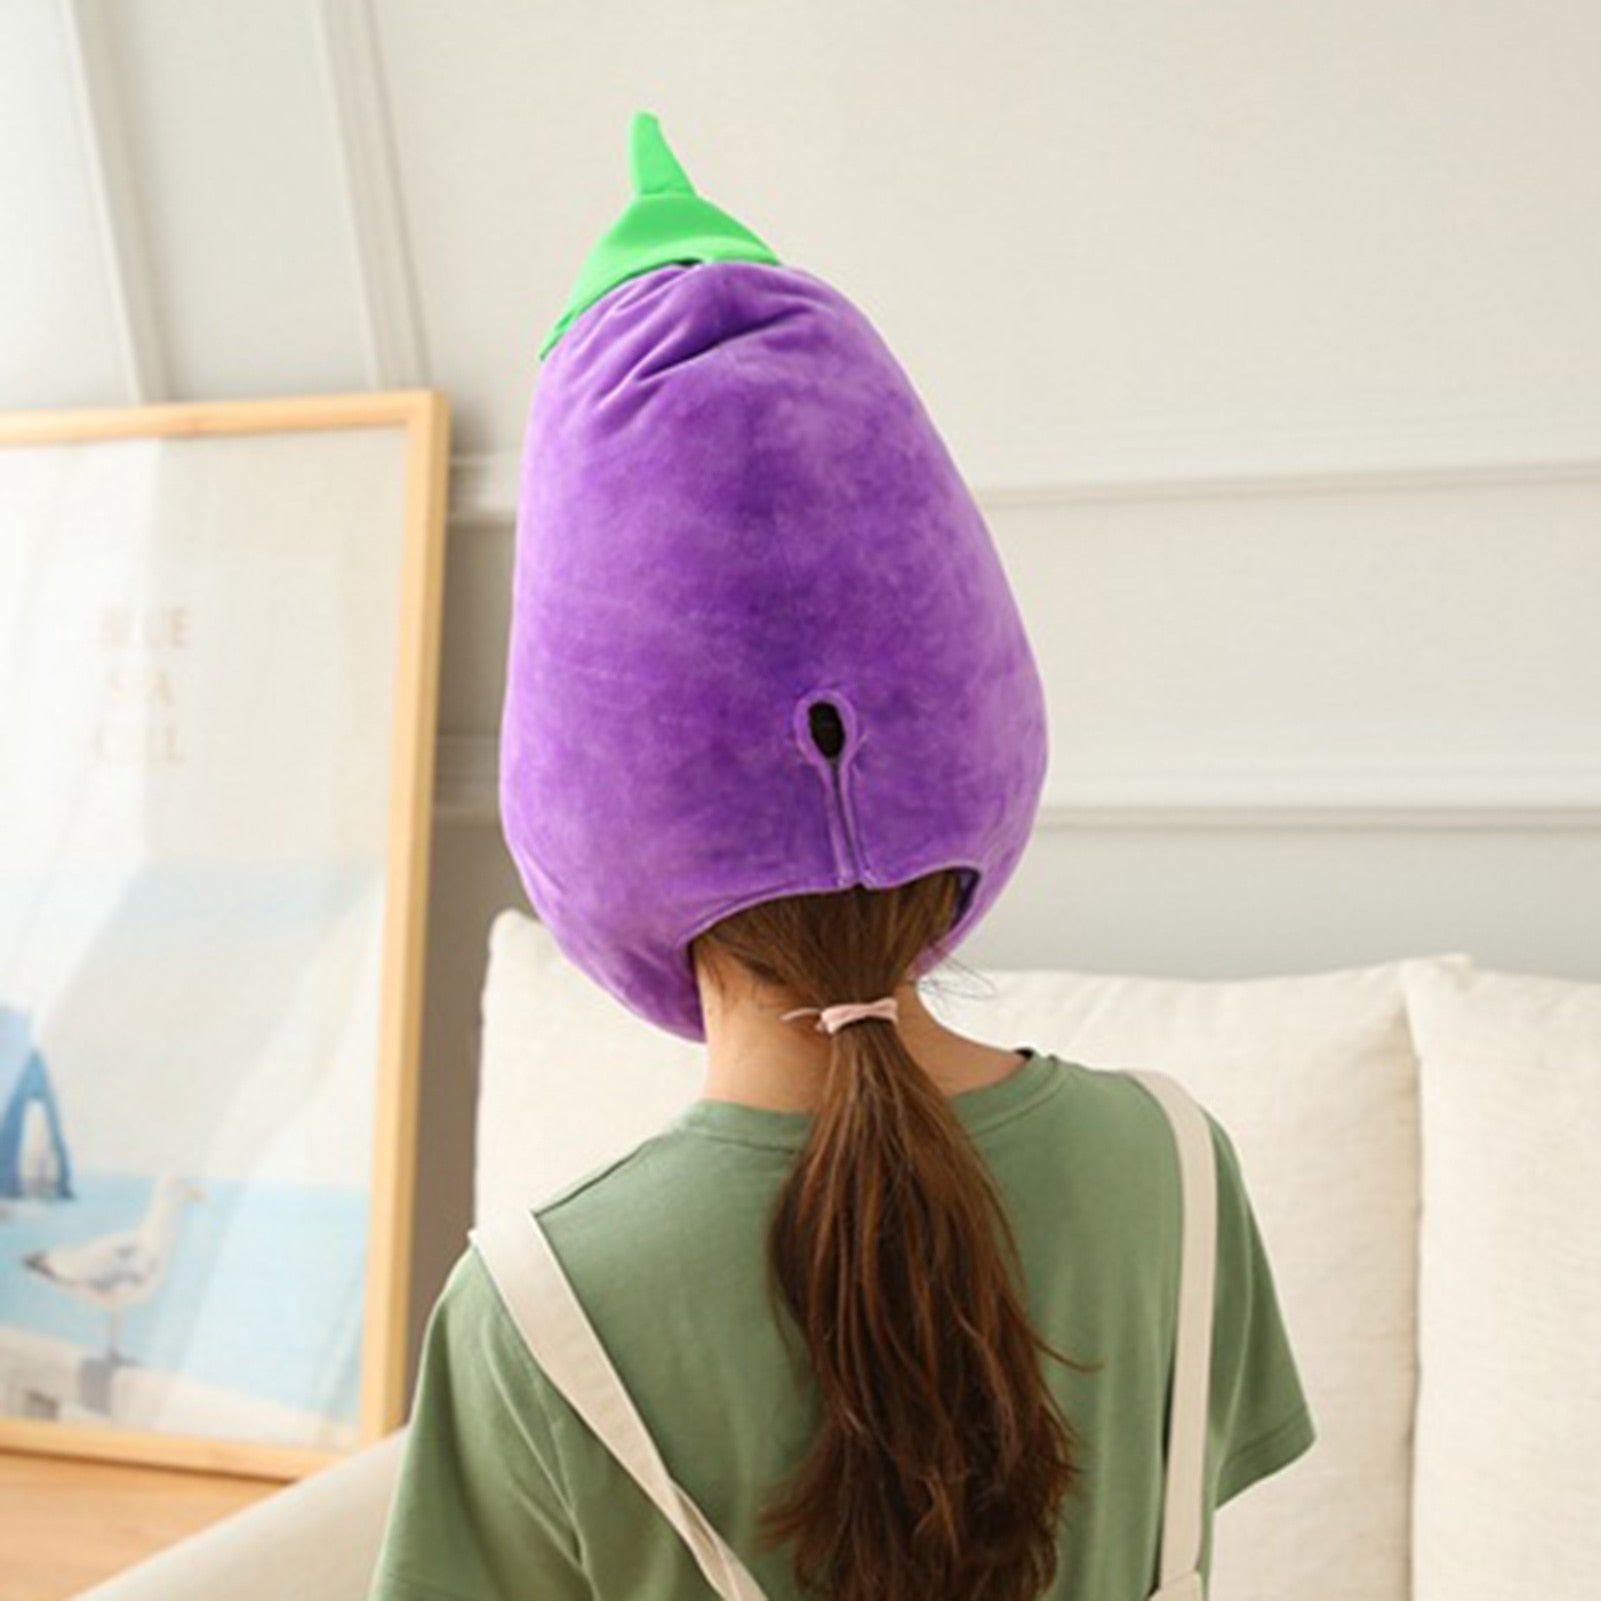 Eggplant Plush Novelty Hat, 18" | 46 cm - Plush Produce